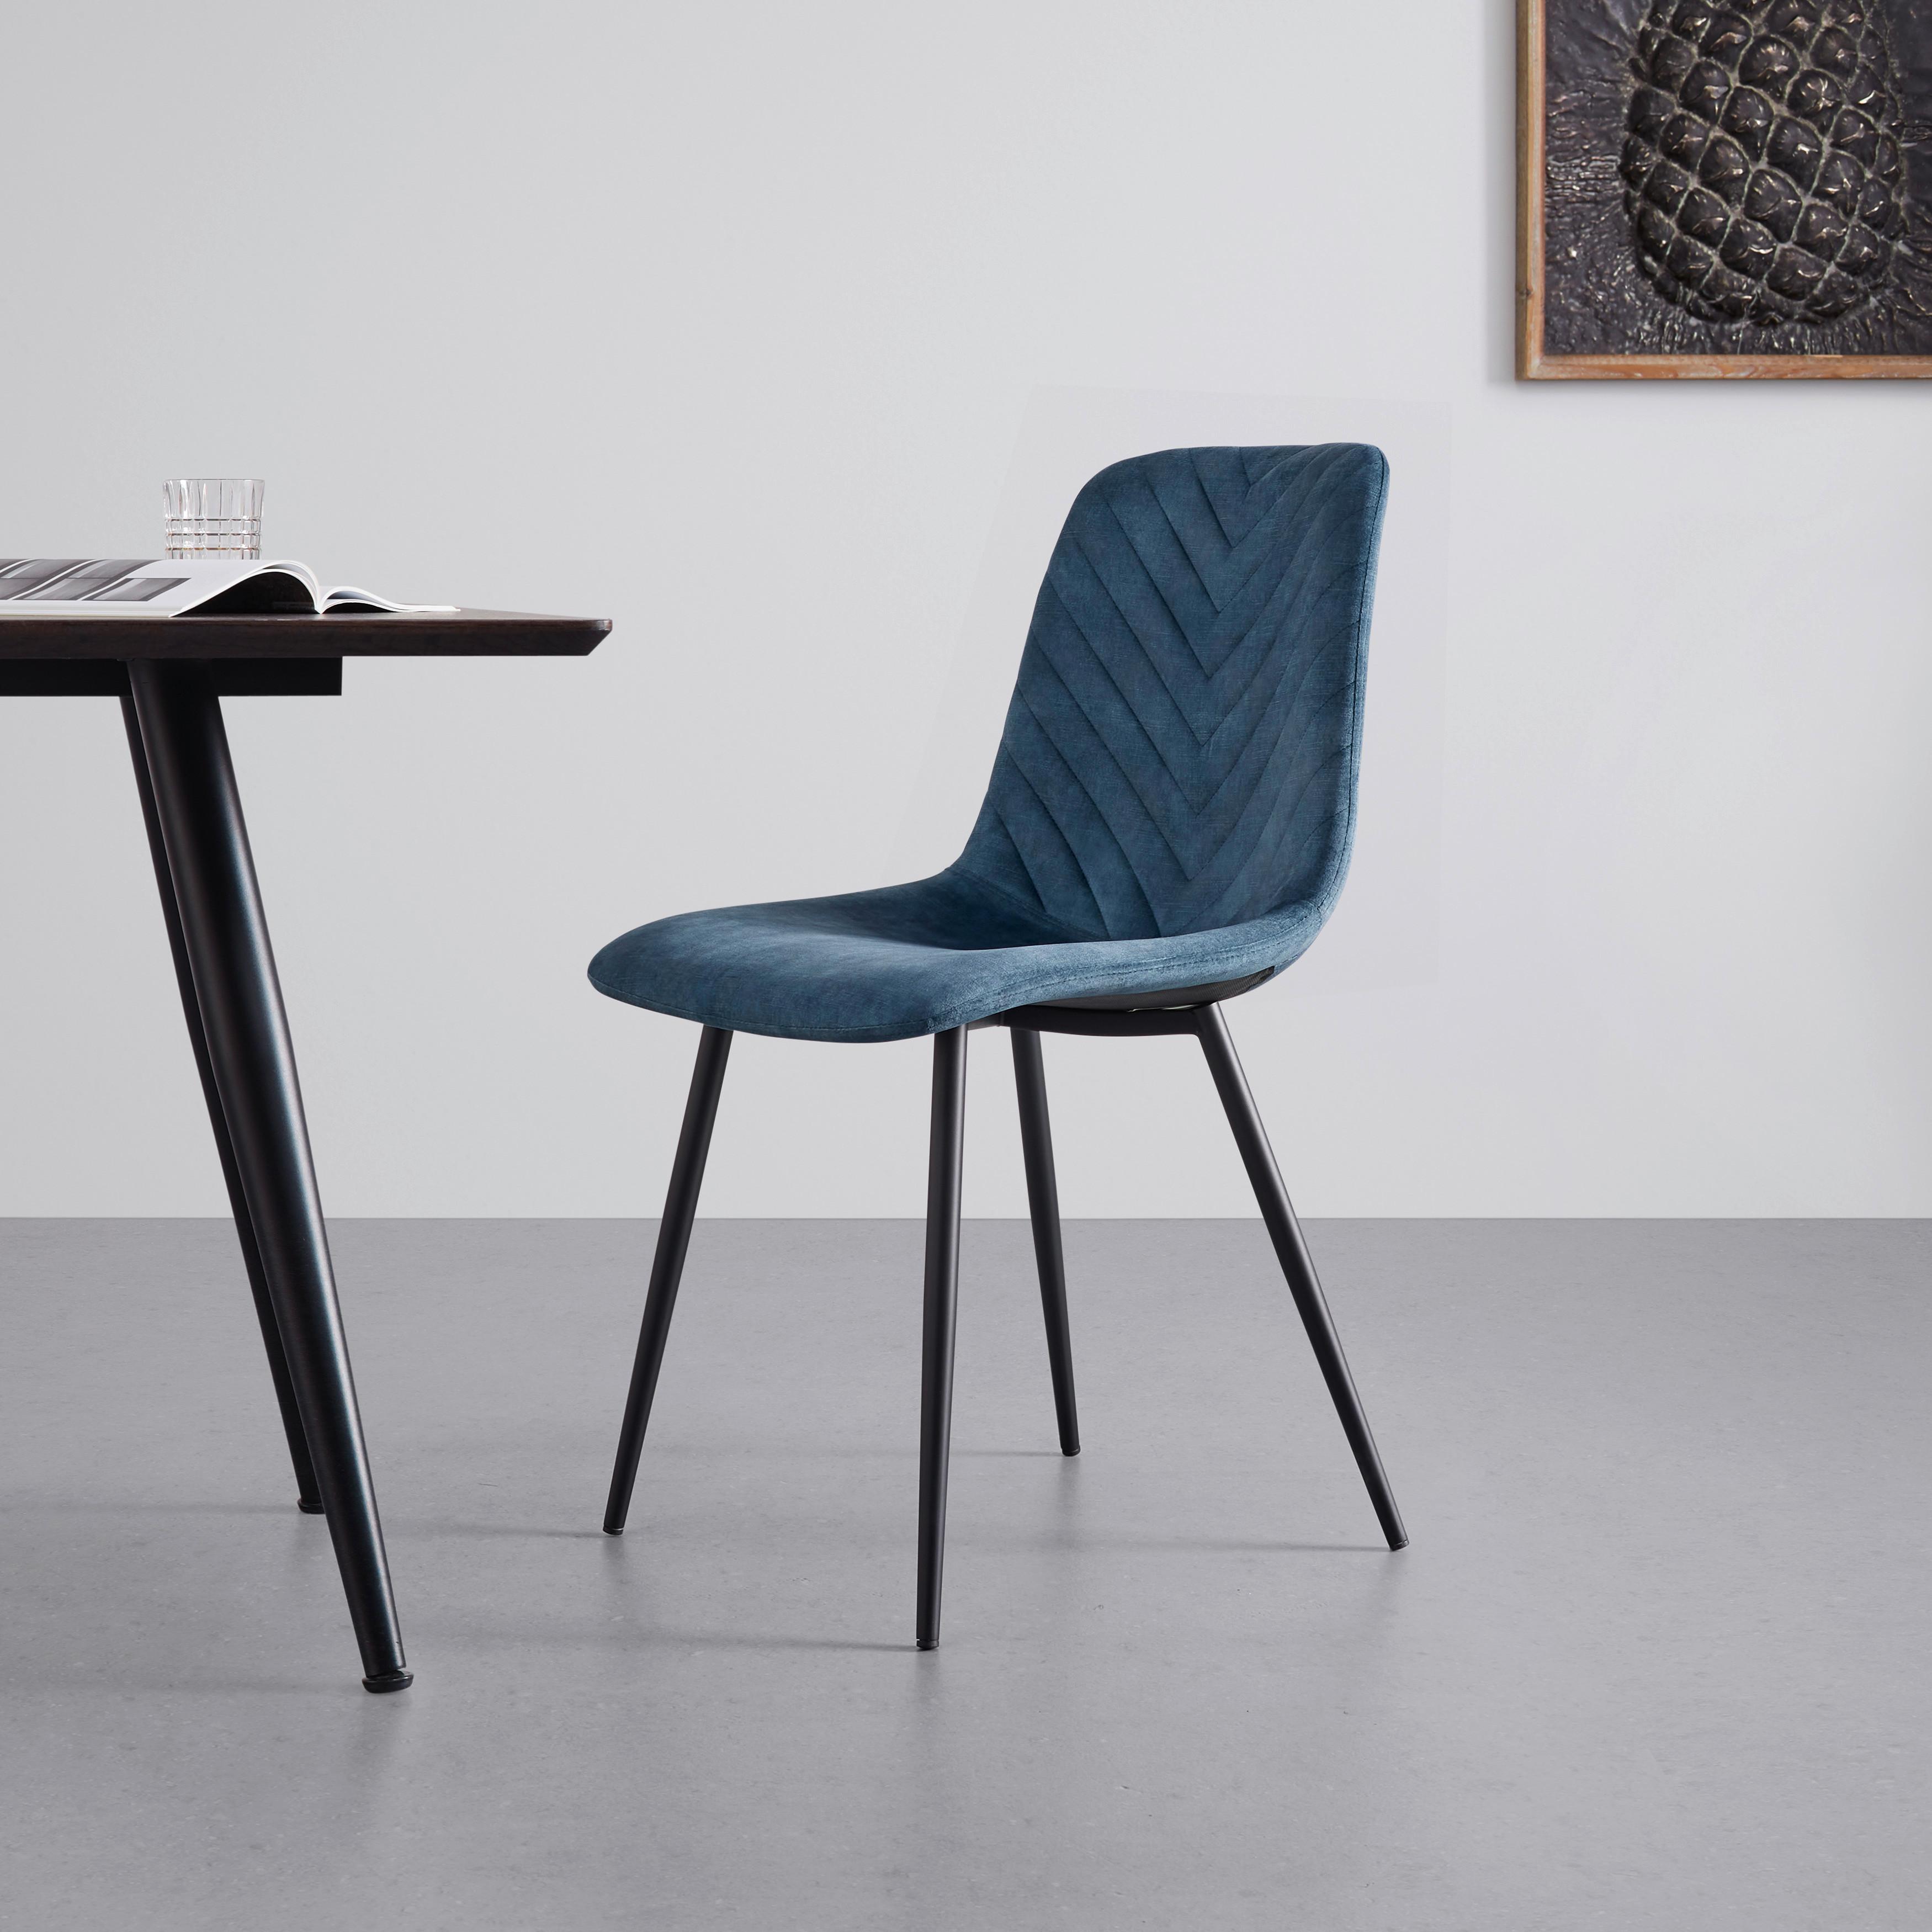 Stuhl "Mona", Samtbezug, blau, gepolstert - Blau/Schwarz, MODERN, Holz/Textil (46/85/56cm) - Bessagi Home